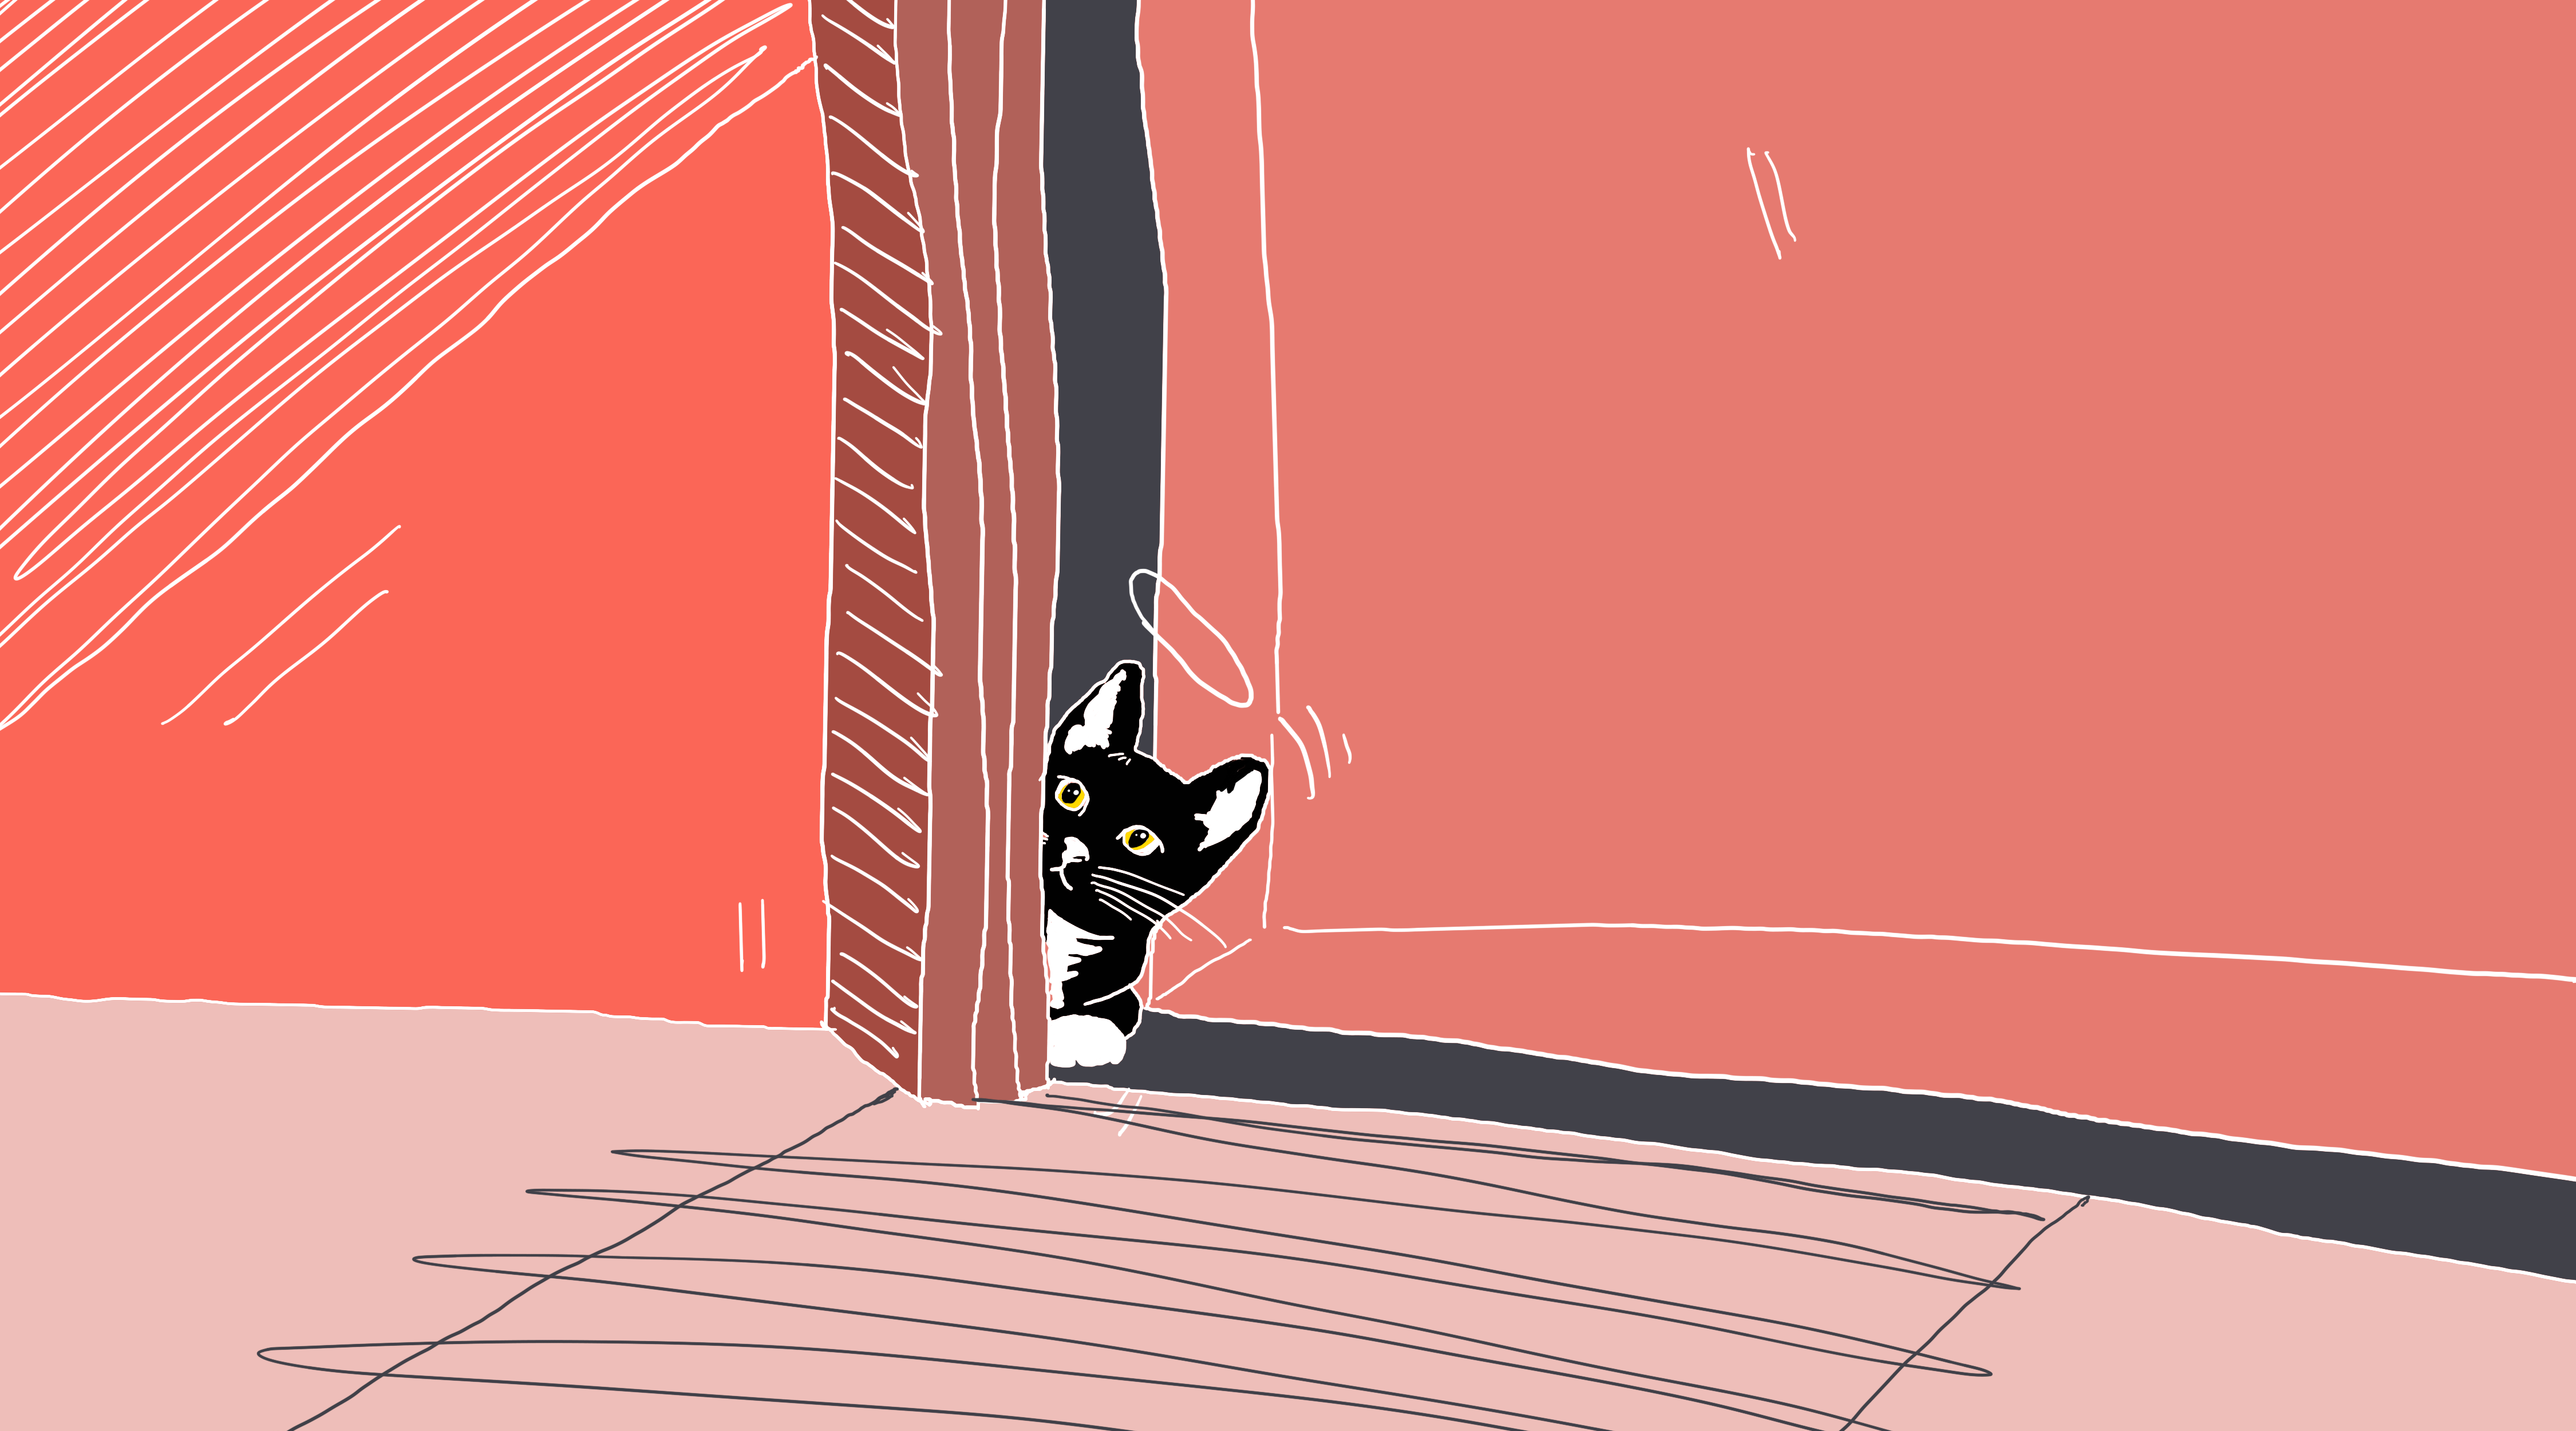 tuxedo cat peeking through a doorway